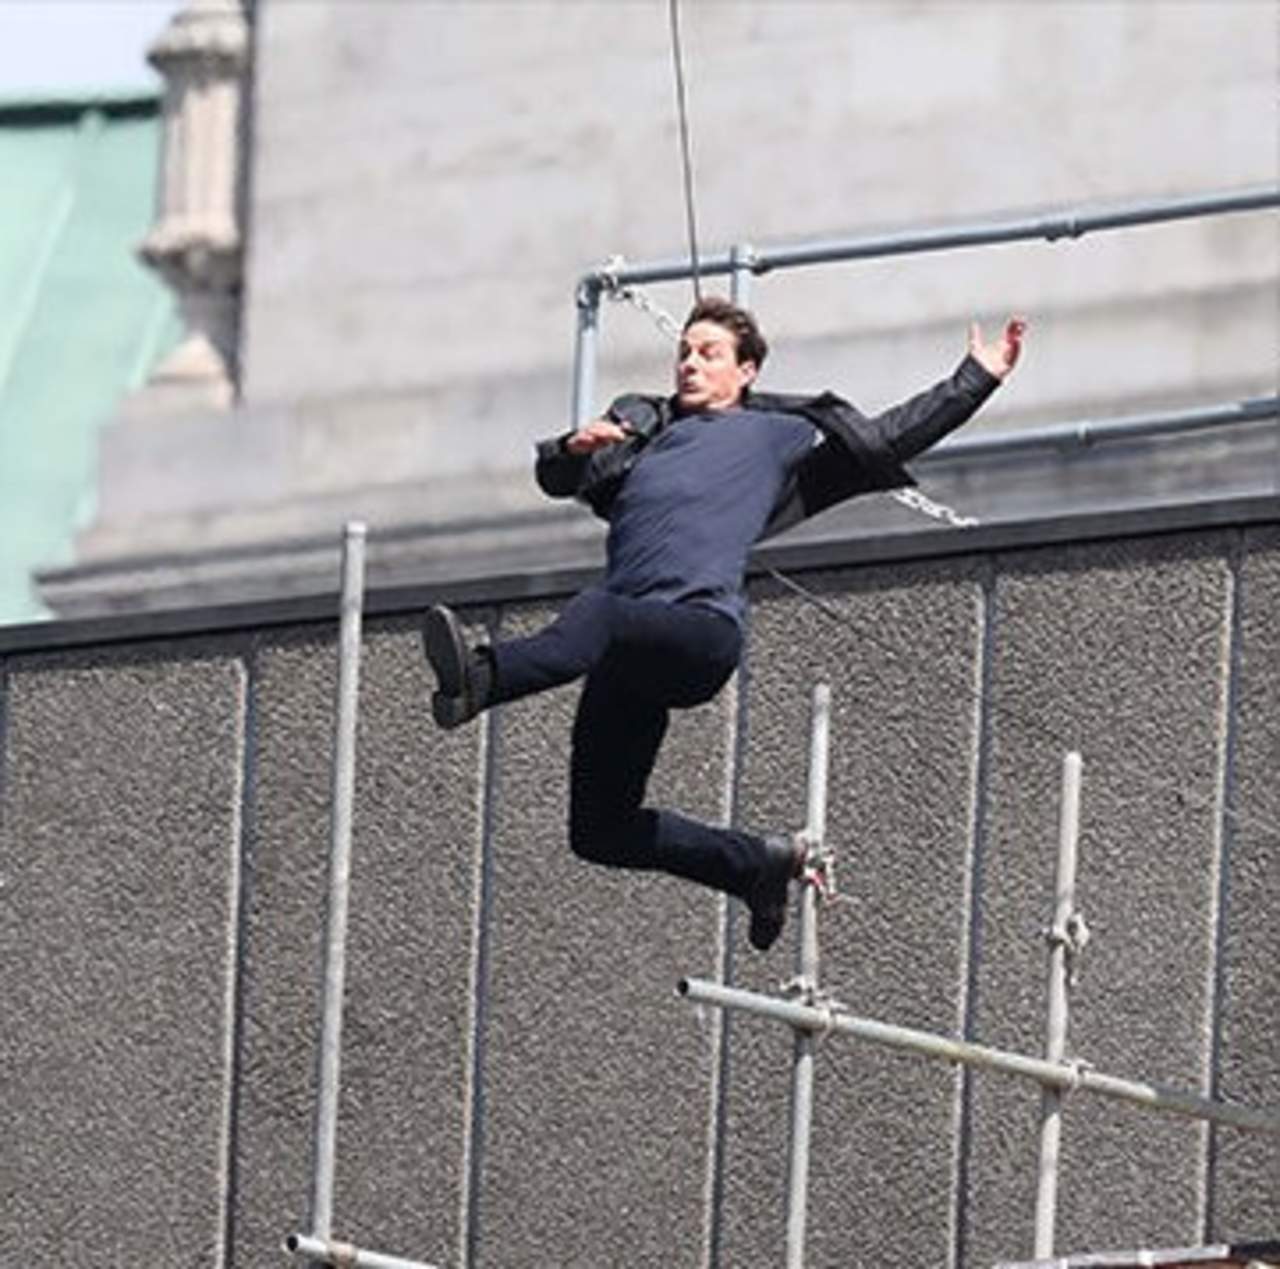 En el video se ve cuando el actor salta a un edificio, golpeándose con un costado, antes de escalarlo y correr huyendo por encima. (TMZ)